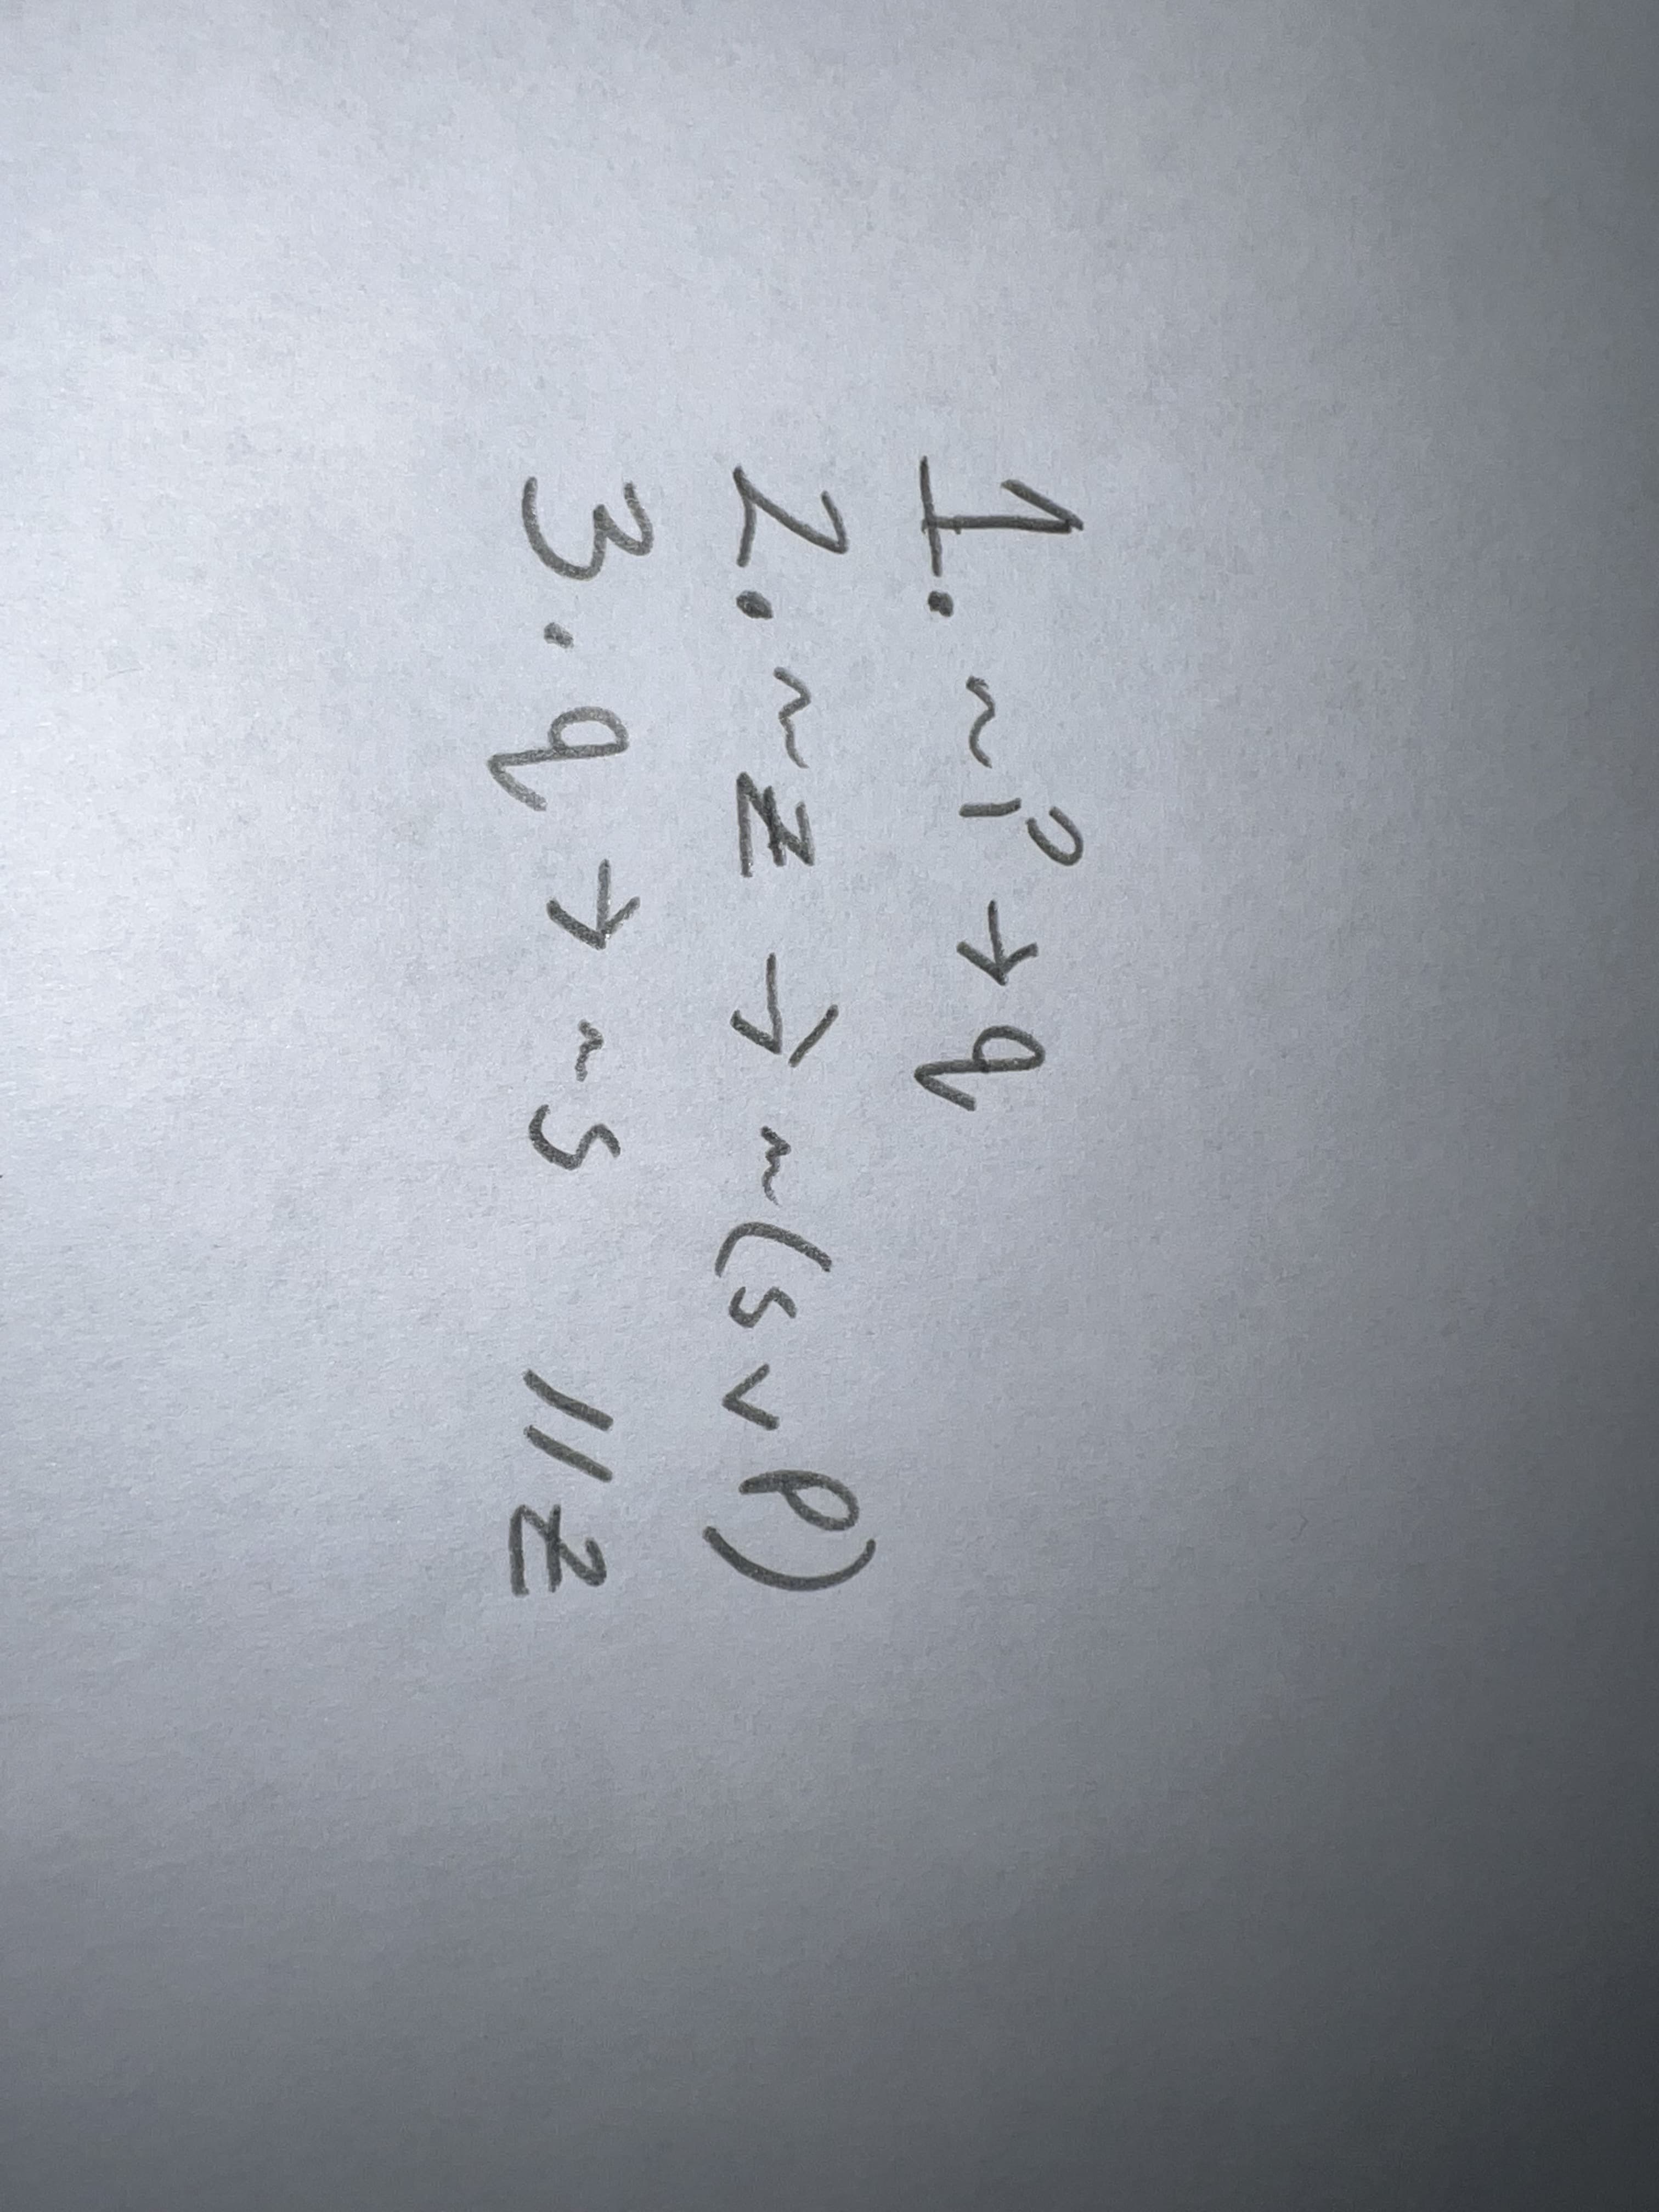 1.~P+9,
2.~z7~(sve)
3.9
IN
->
